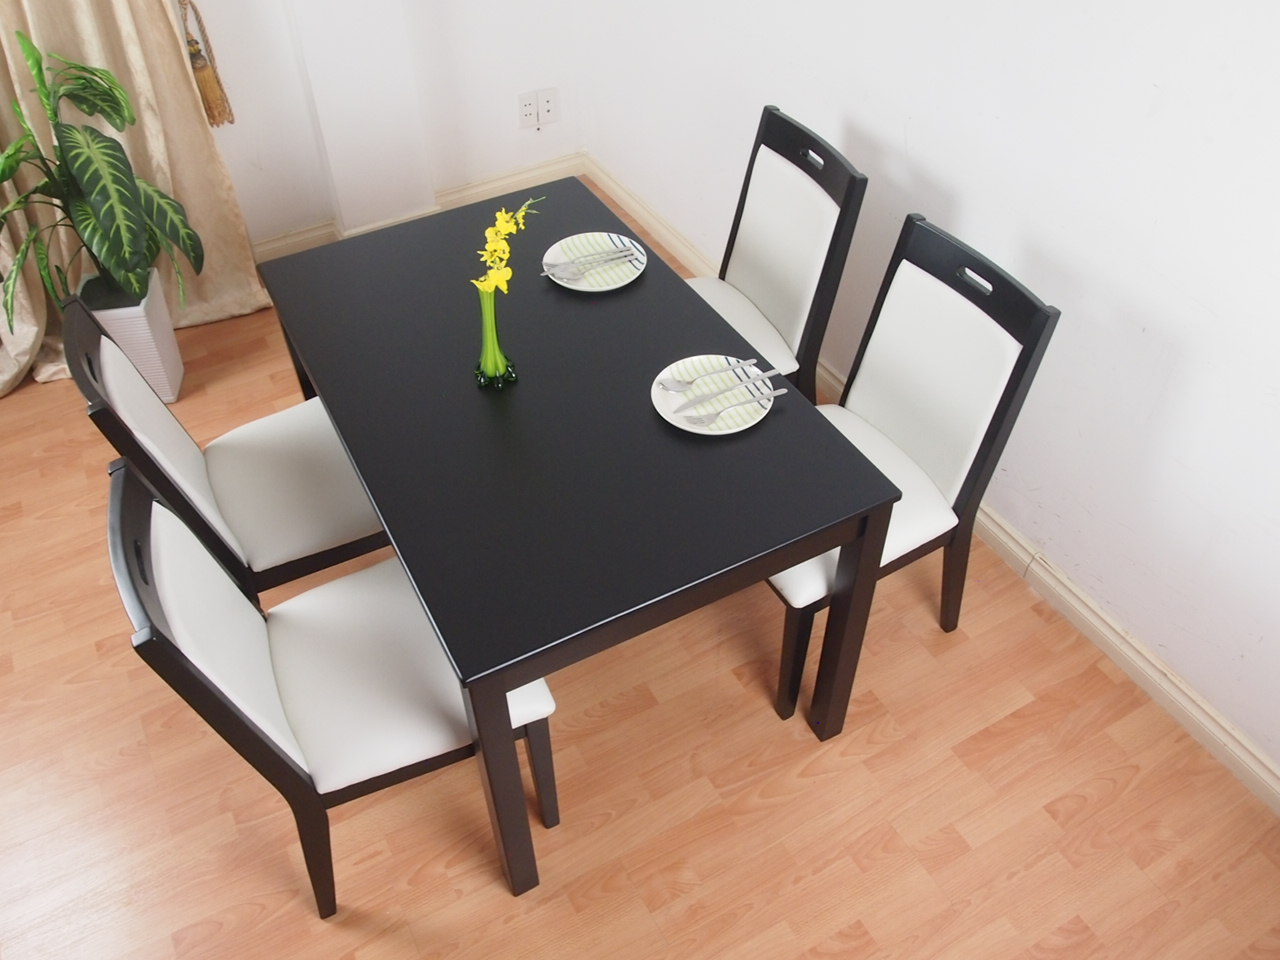 Bộ bàn ăn đen trắng kết hợp độc đáo trang nhã.